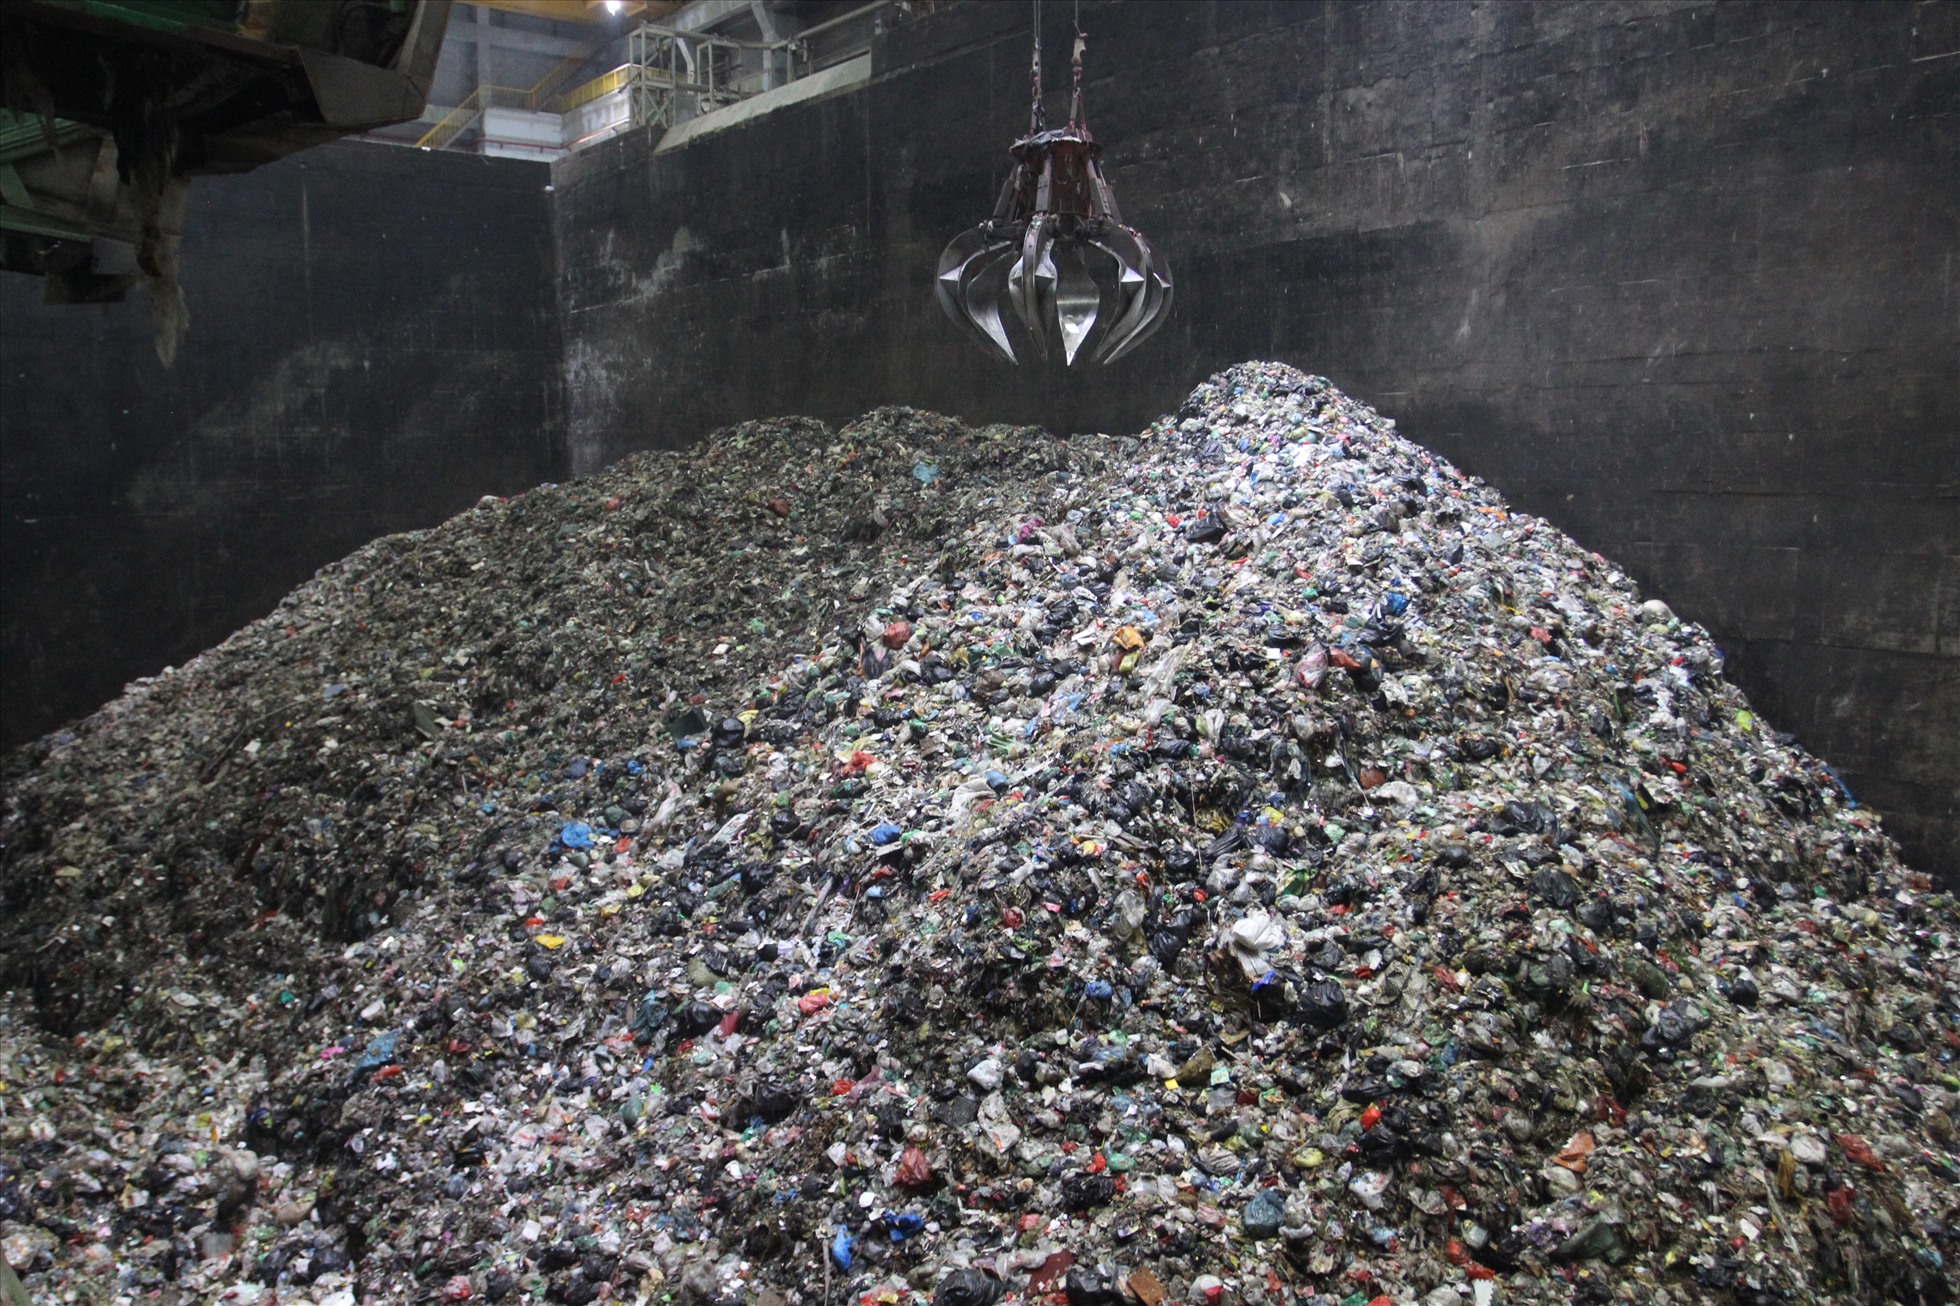 Tại lò đốt rác- điểm cuối xử lý chất thải rắn thì rác thải nhựa được trộn lẫn với các loại rác thải hữu cơ, vô cơ khác. Ảnh: Thùy Linh